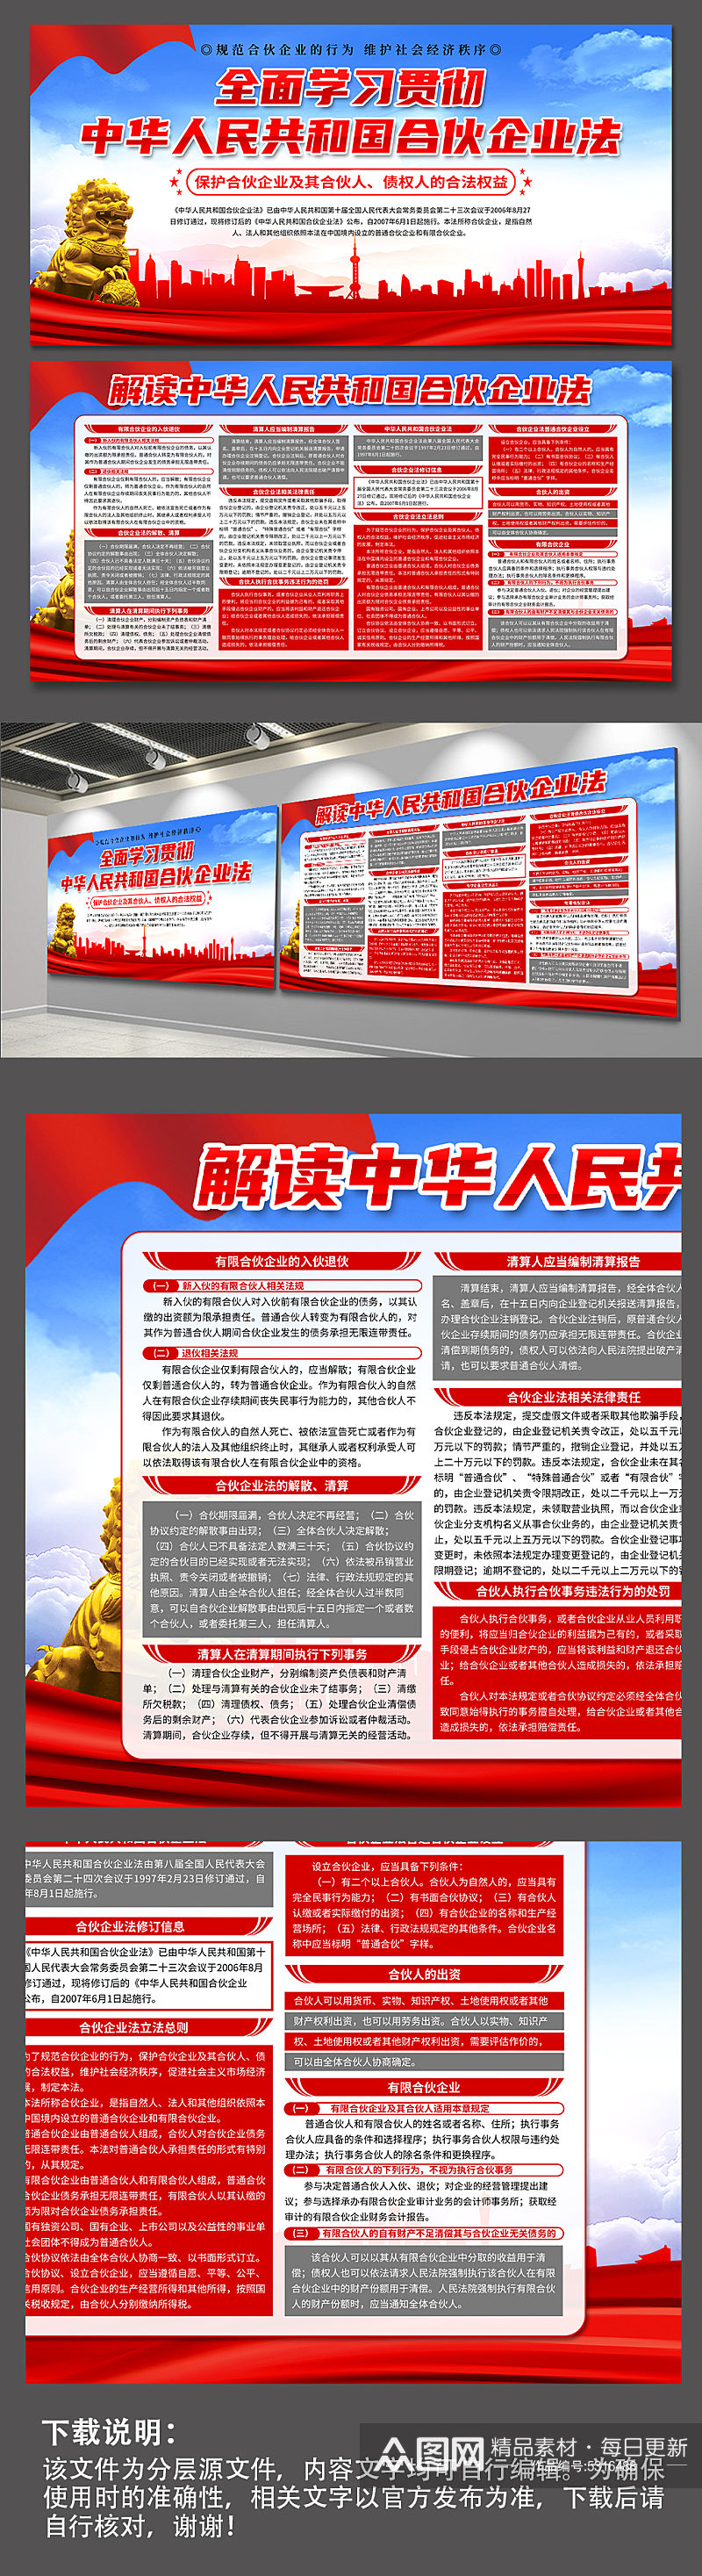 中华人民共和国合伙企业法党建展板素材